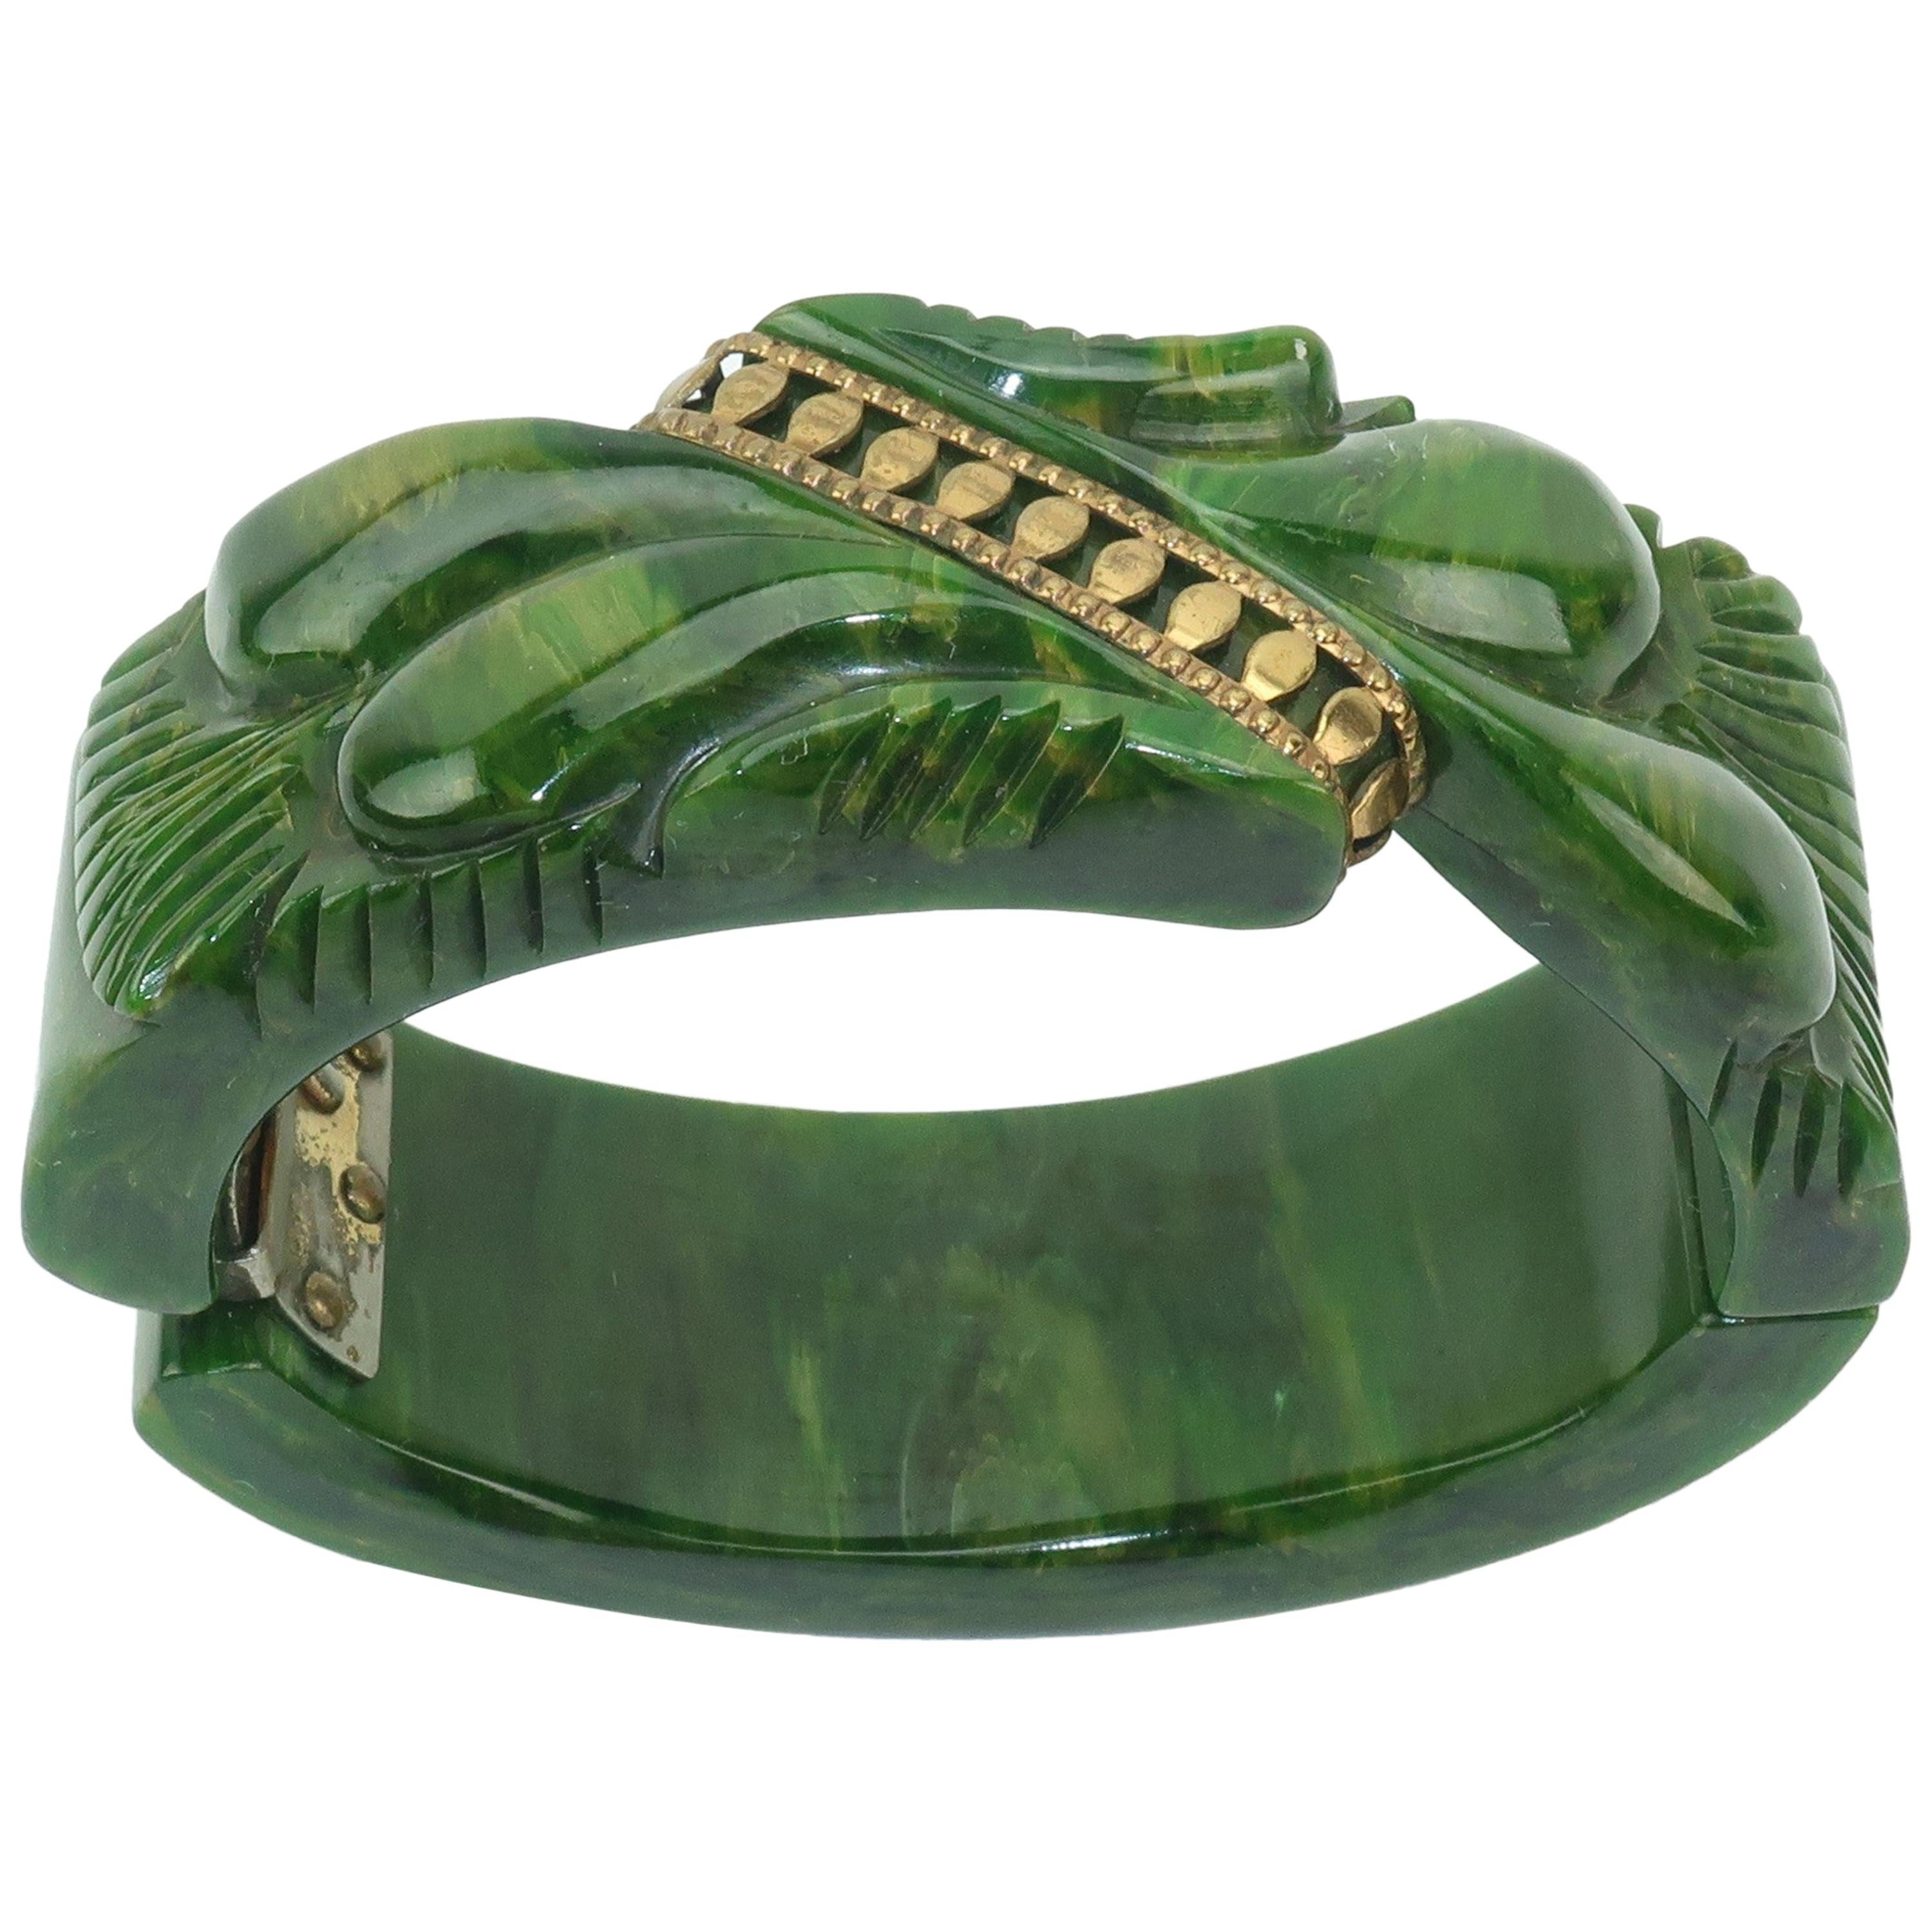 C.1940 Carved Green Bakelite Clamper Bracelet With Gold Details